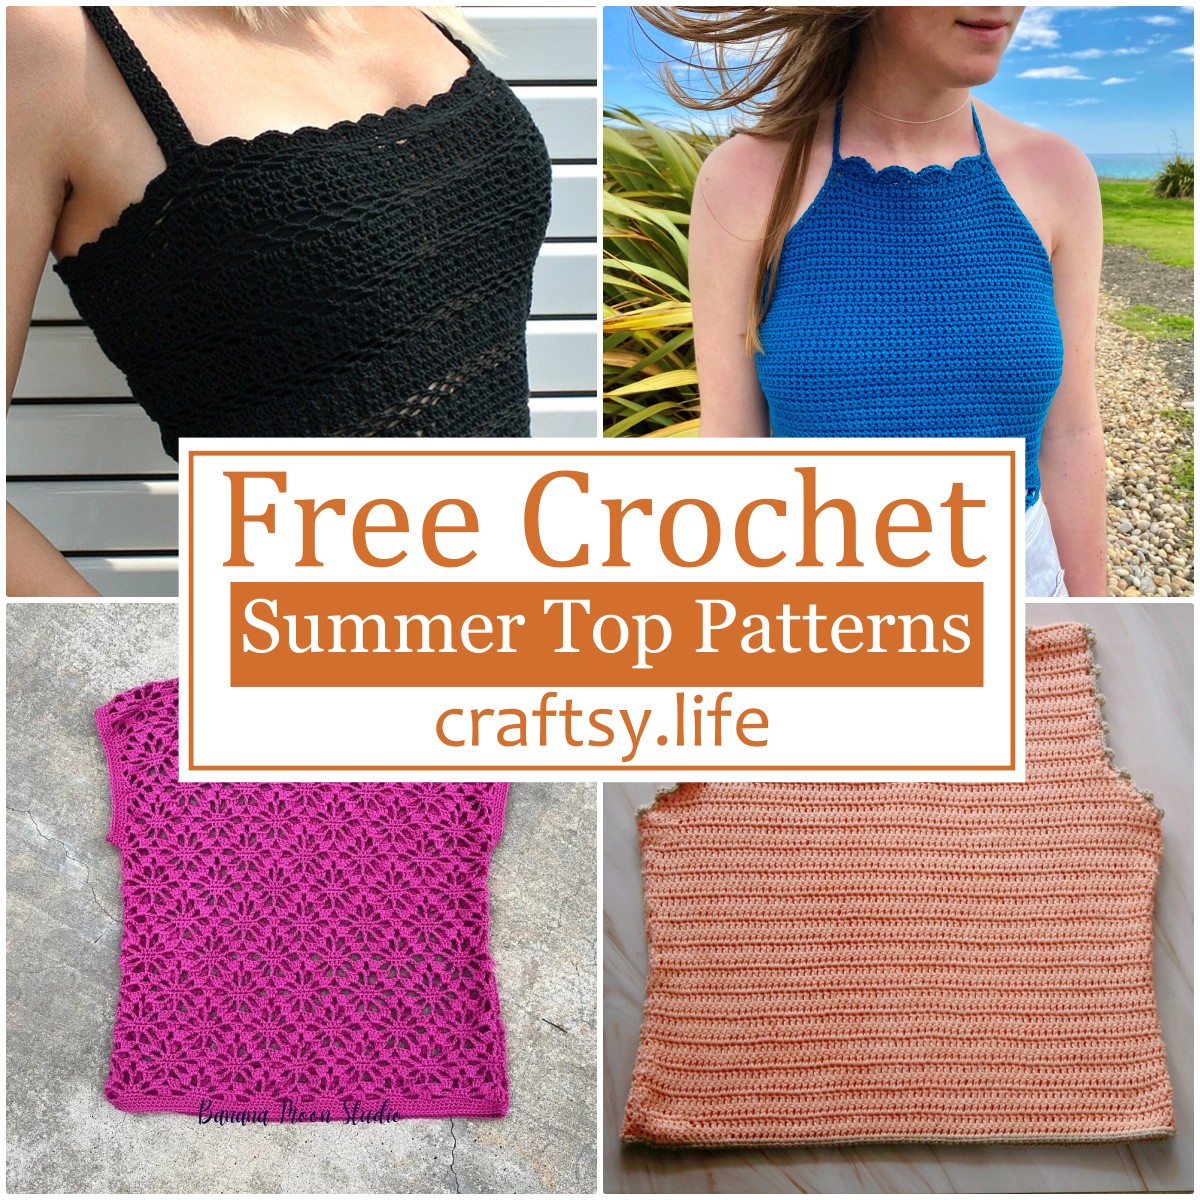 Free Crochet Summer Top Patterns